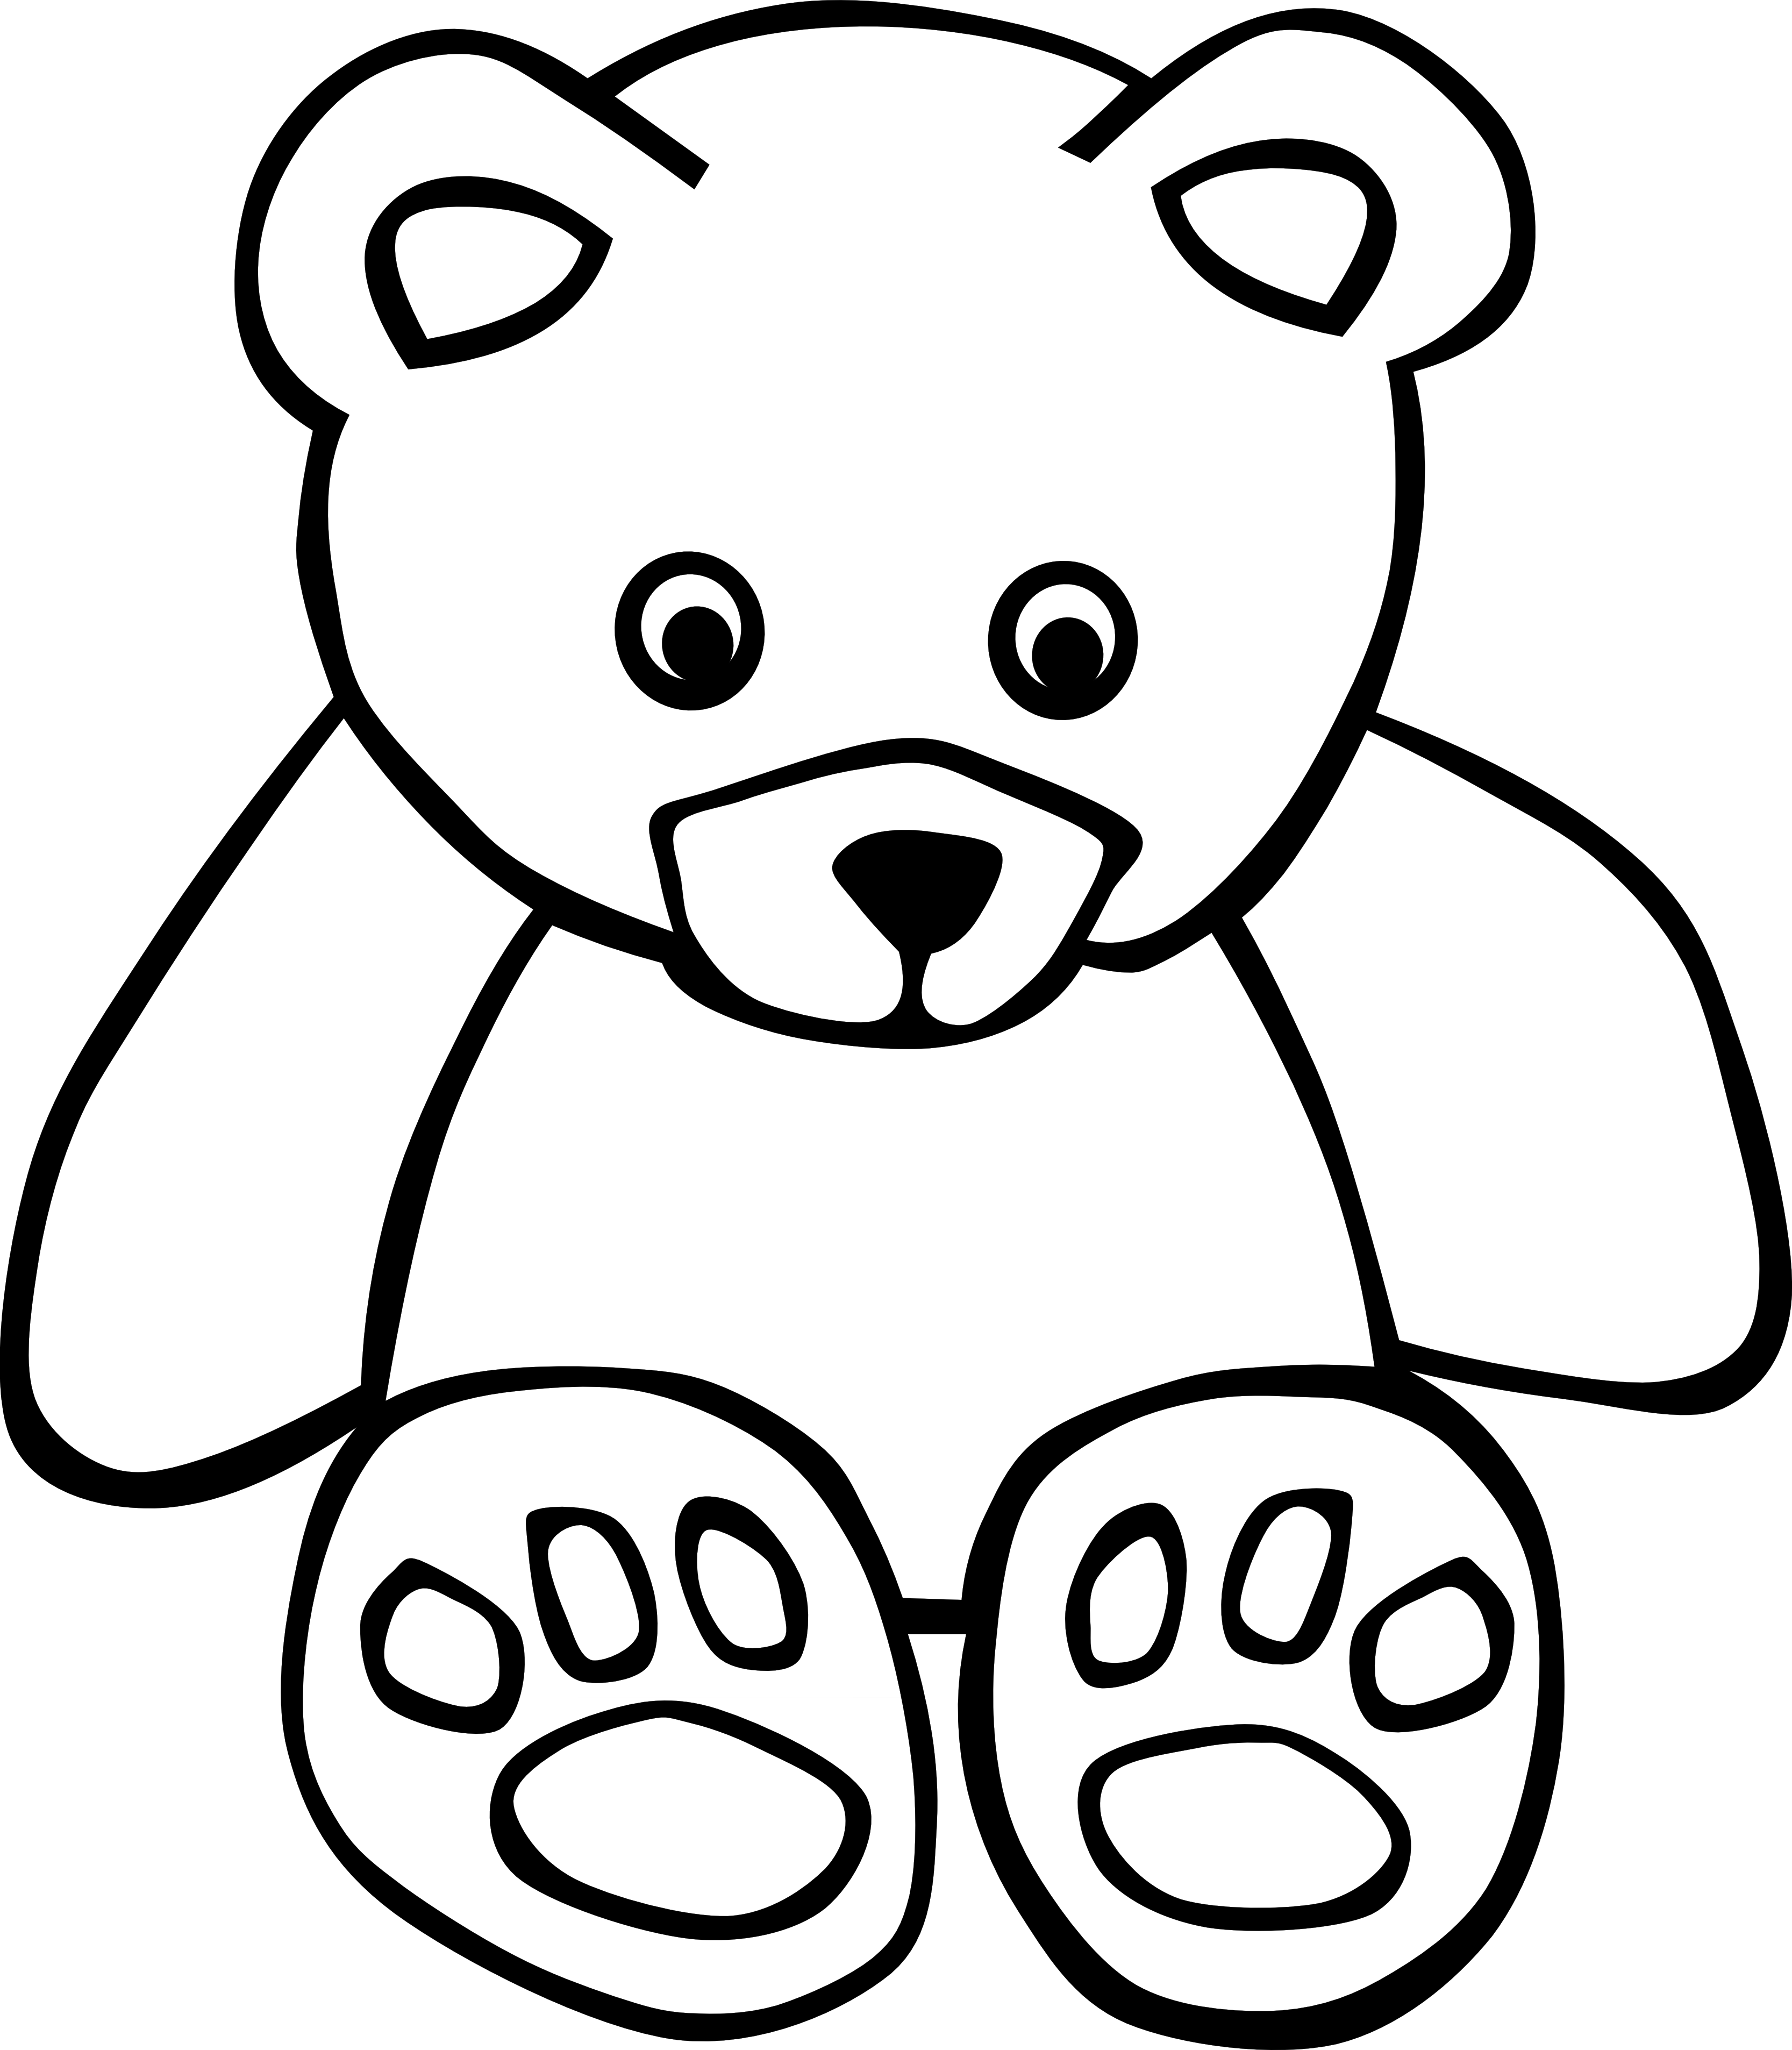 Teddy bear clip art